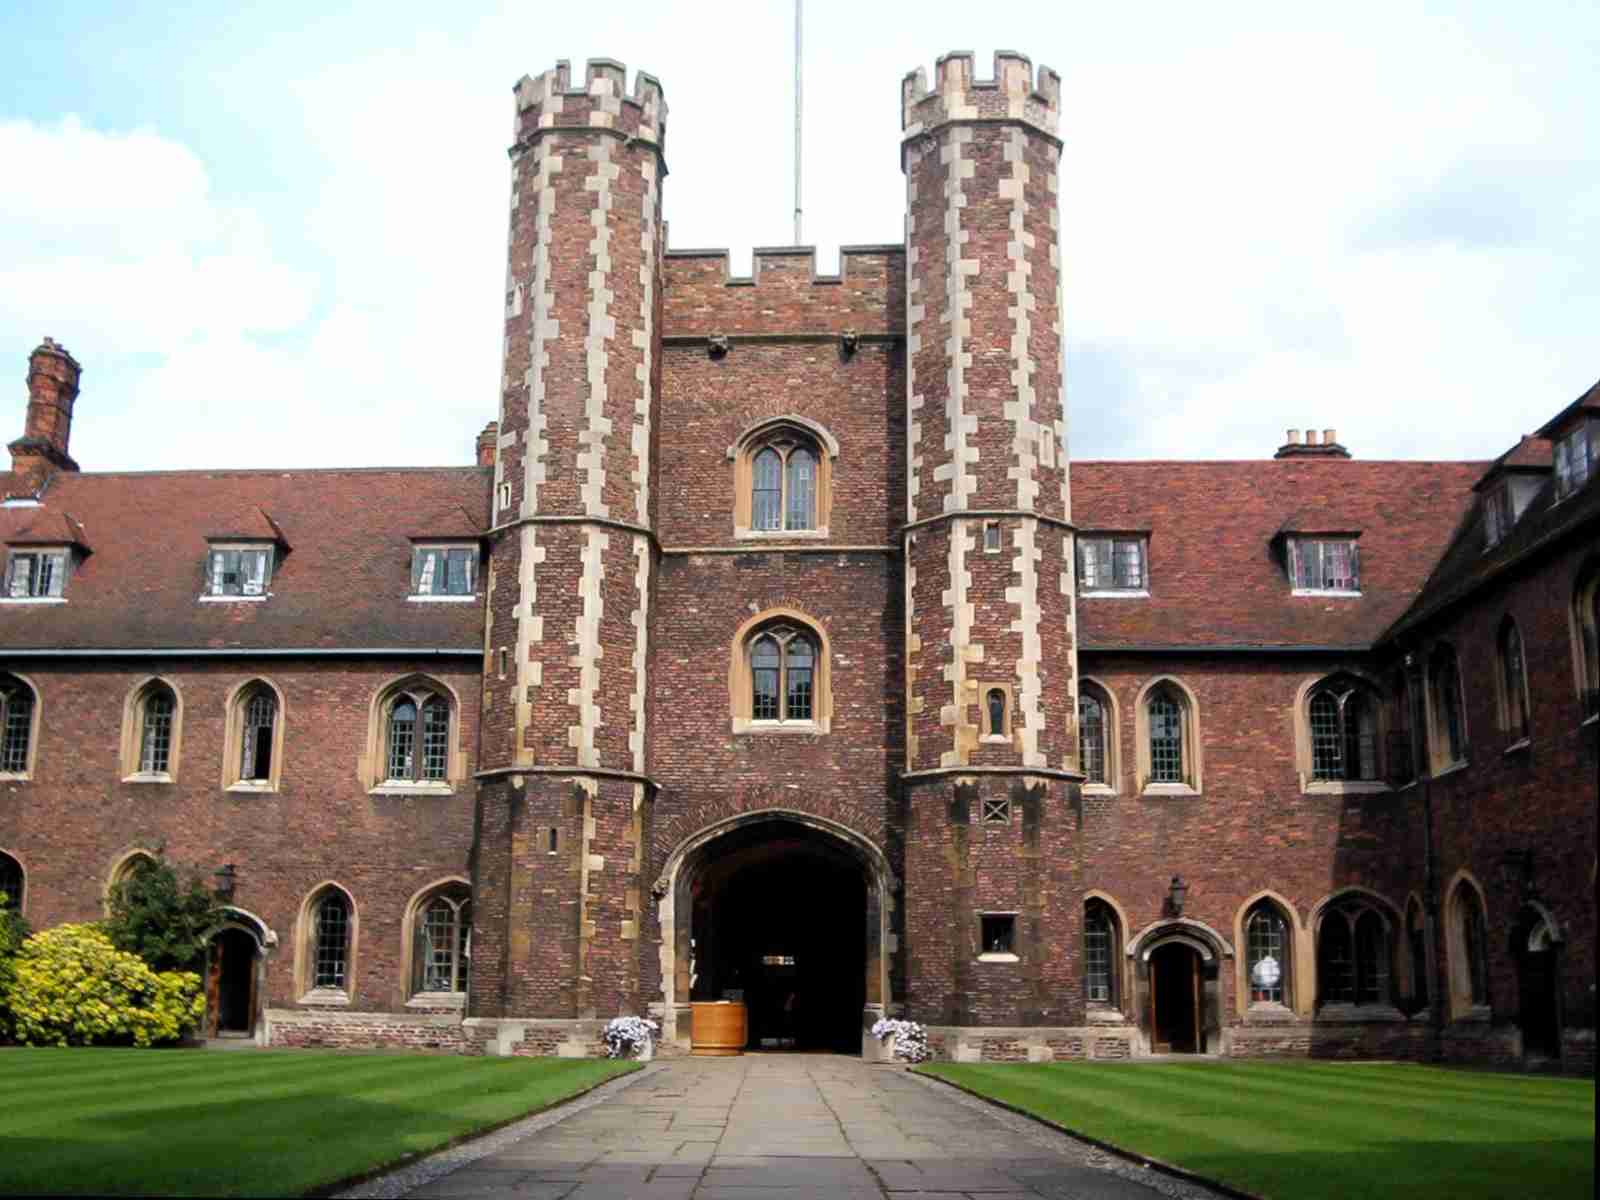 Queens’ College Cambridge Gatehouse